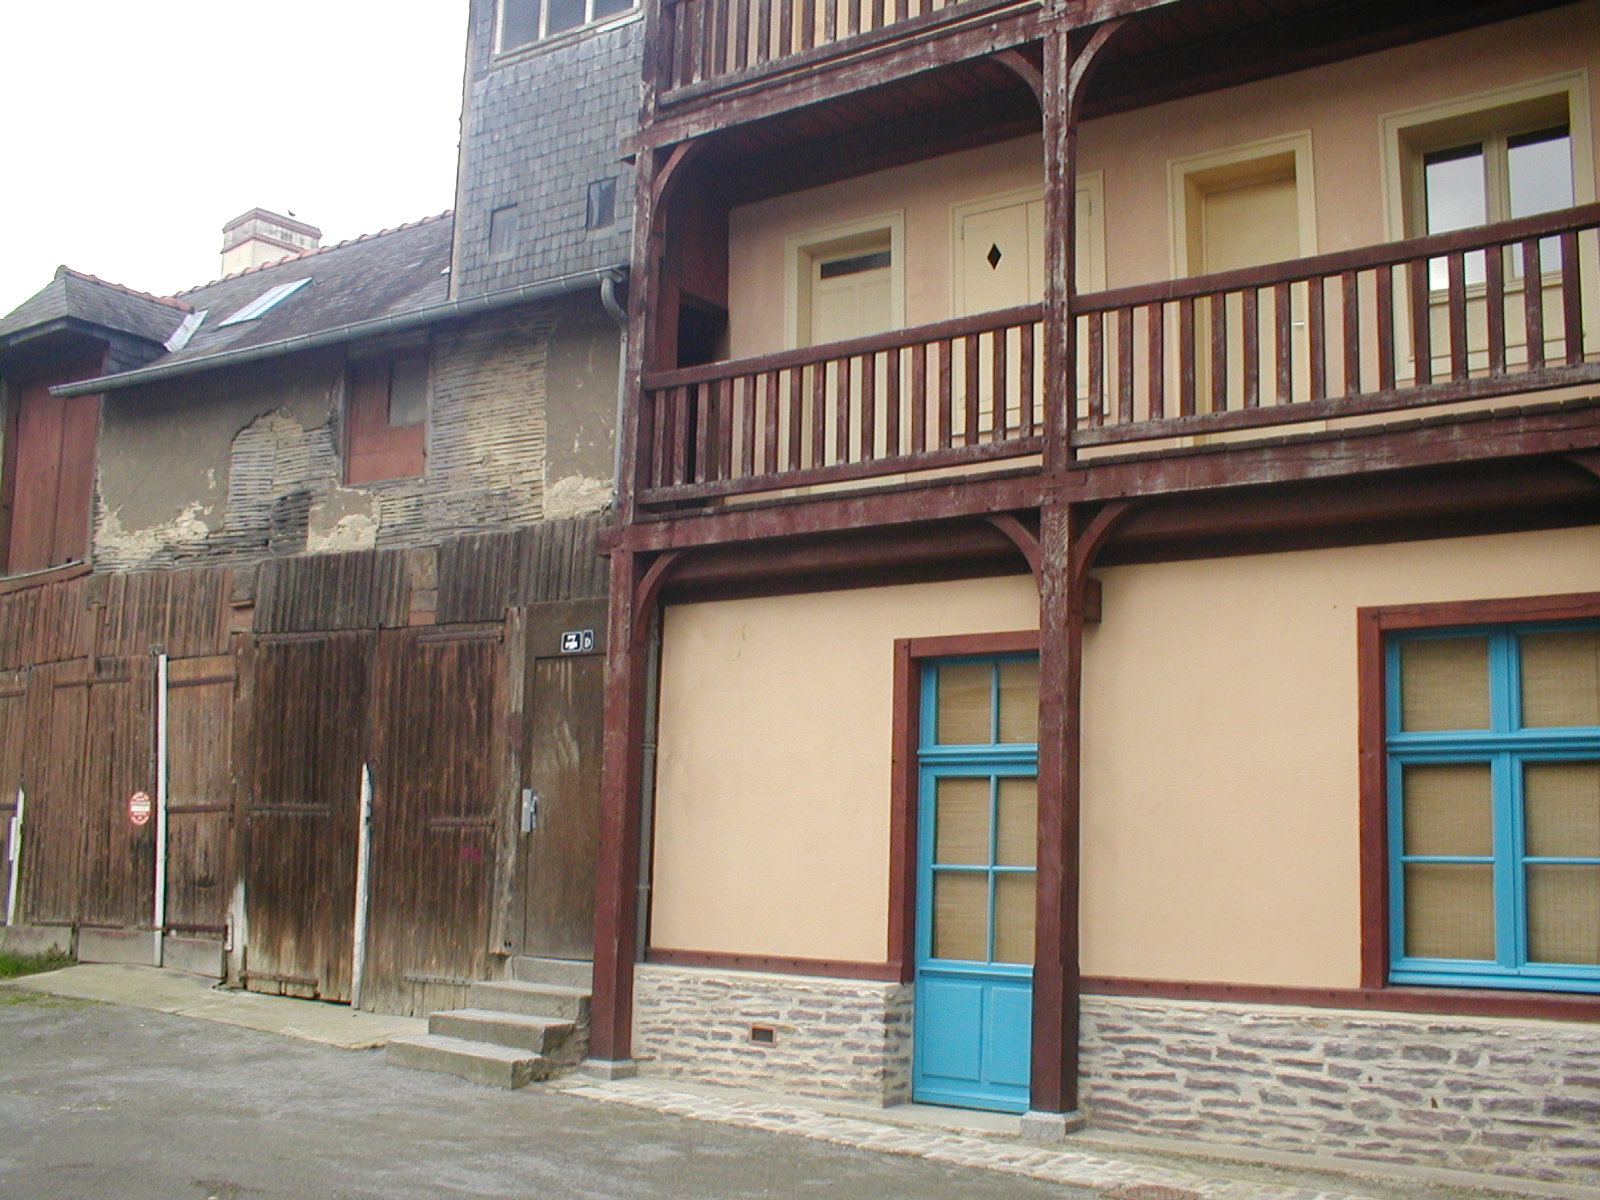 Hostellerie Saint-Michel cour intérieure